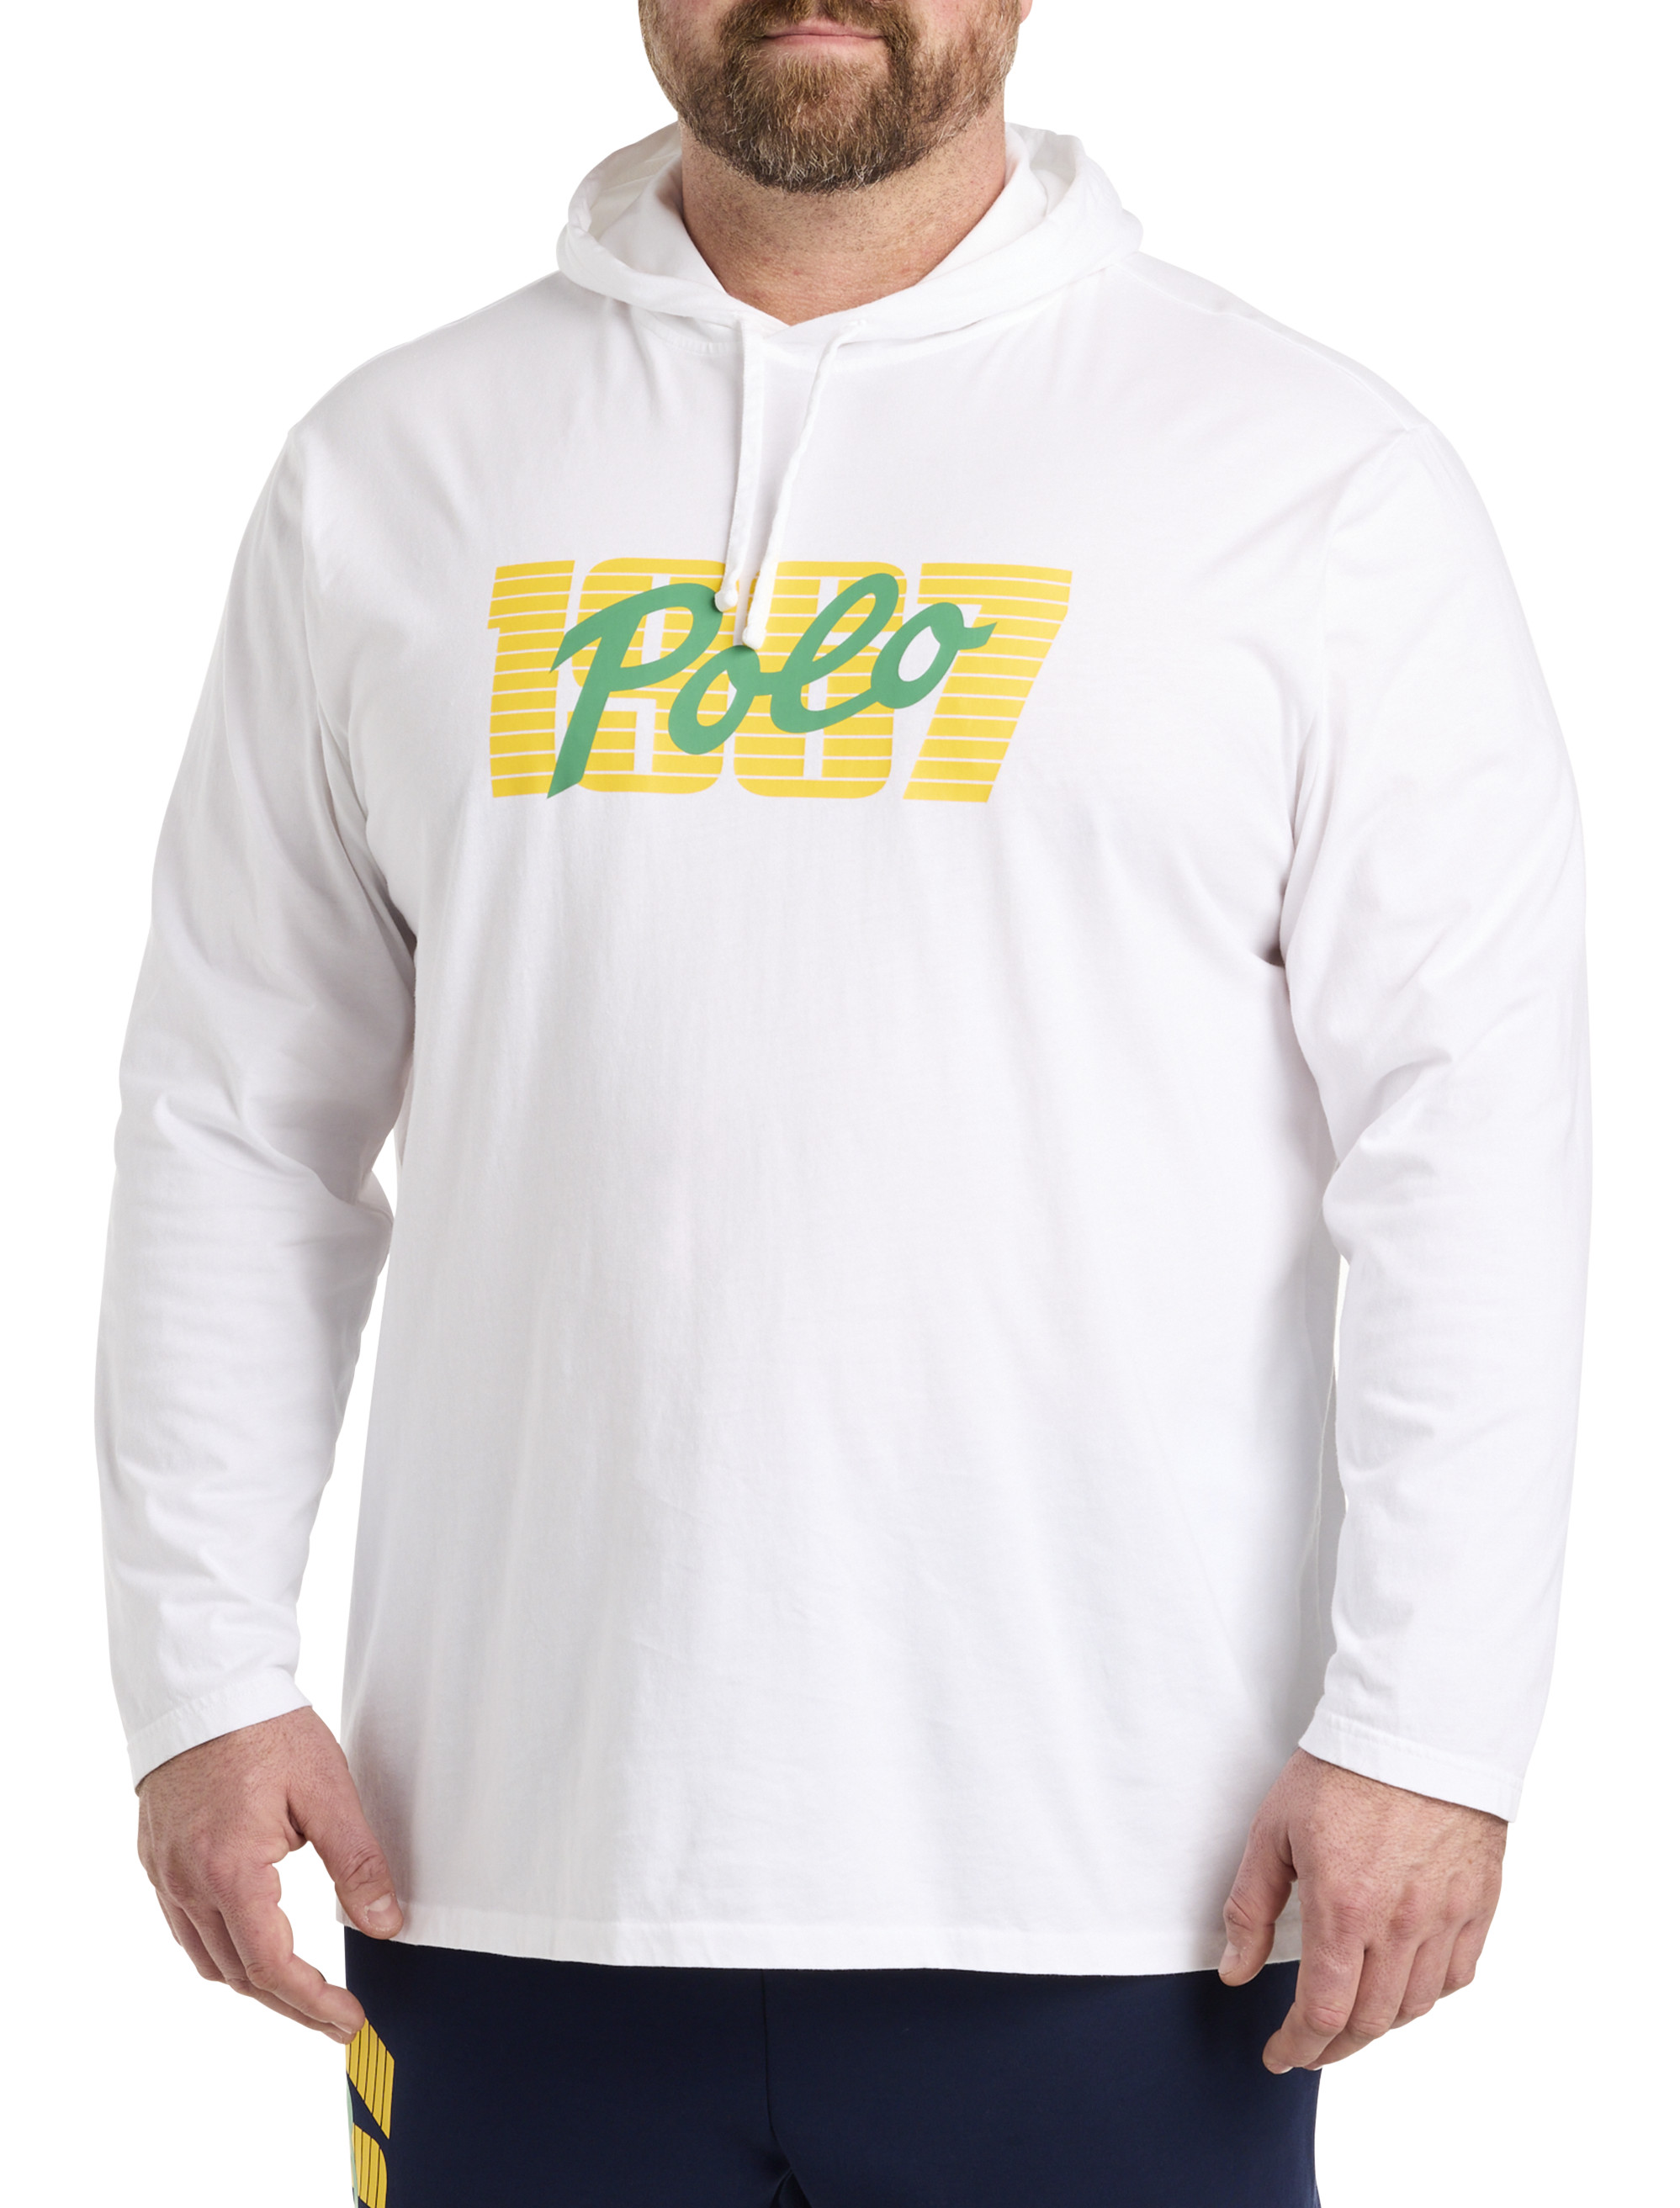 Polo Ralph Lauren Polo Shirt Big & Tall 3XB White w/Beach POLO